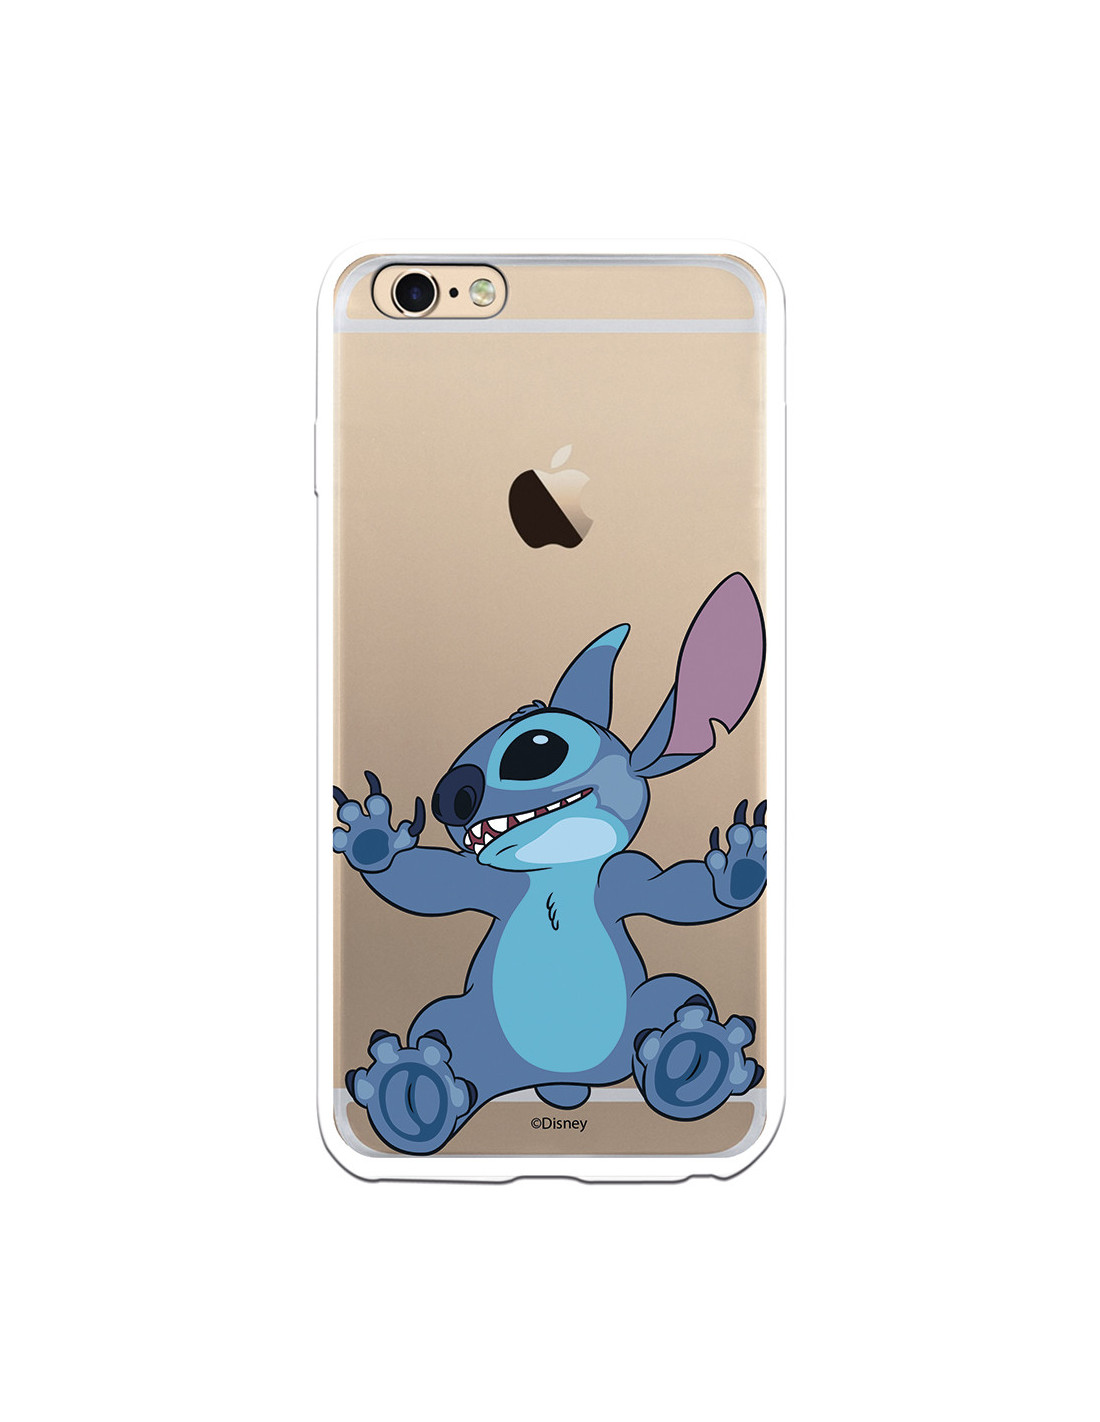 Funda para iPhone 6 Plus Oficial de Disney Stitch Trepando - Lilo & Stitch